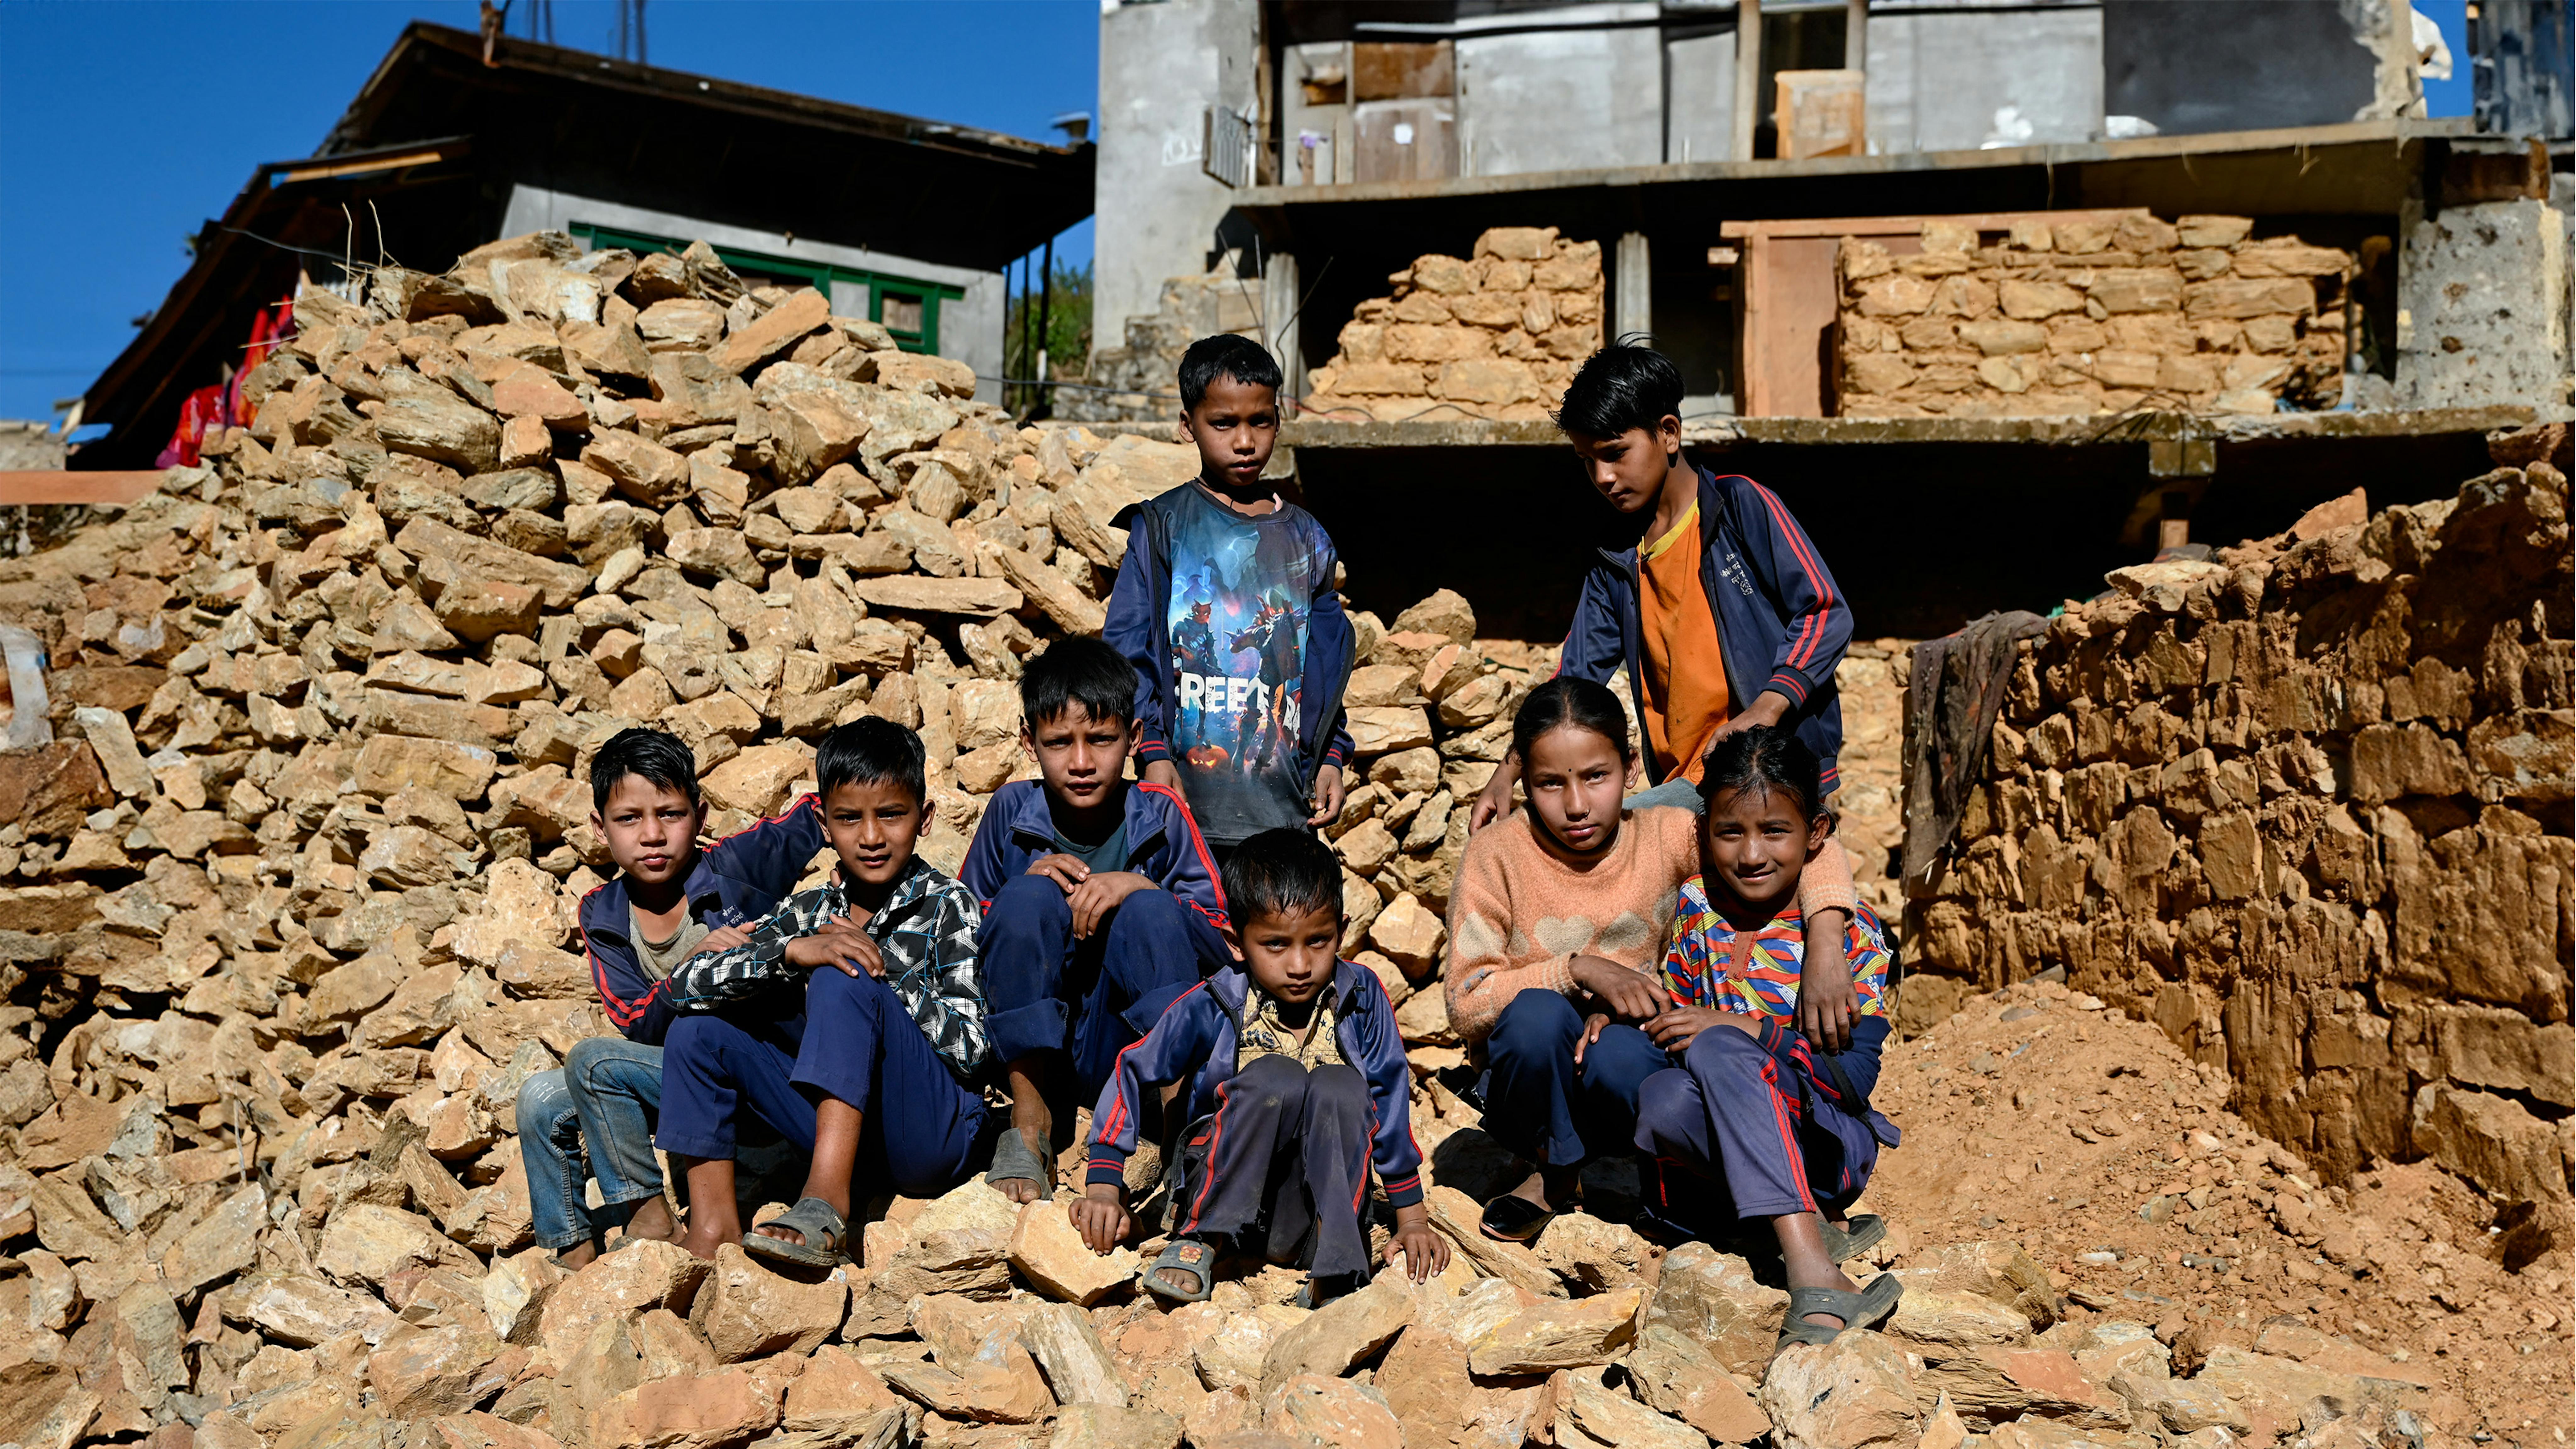 nella municipalità rurale di Sani Bheri, nel distretto occidentale di Rukum, nel Nepal occidentale, gli studenti della scuola secondaria superiore Shree Saraswati osservano la costruzione di un centro di apprendimento transitorio nei locali con il sostegno dell'UNICEF.